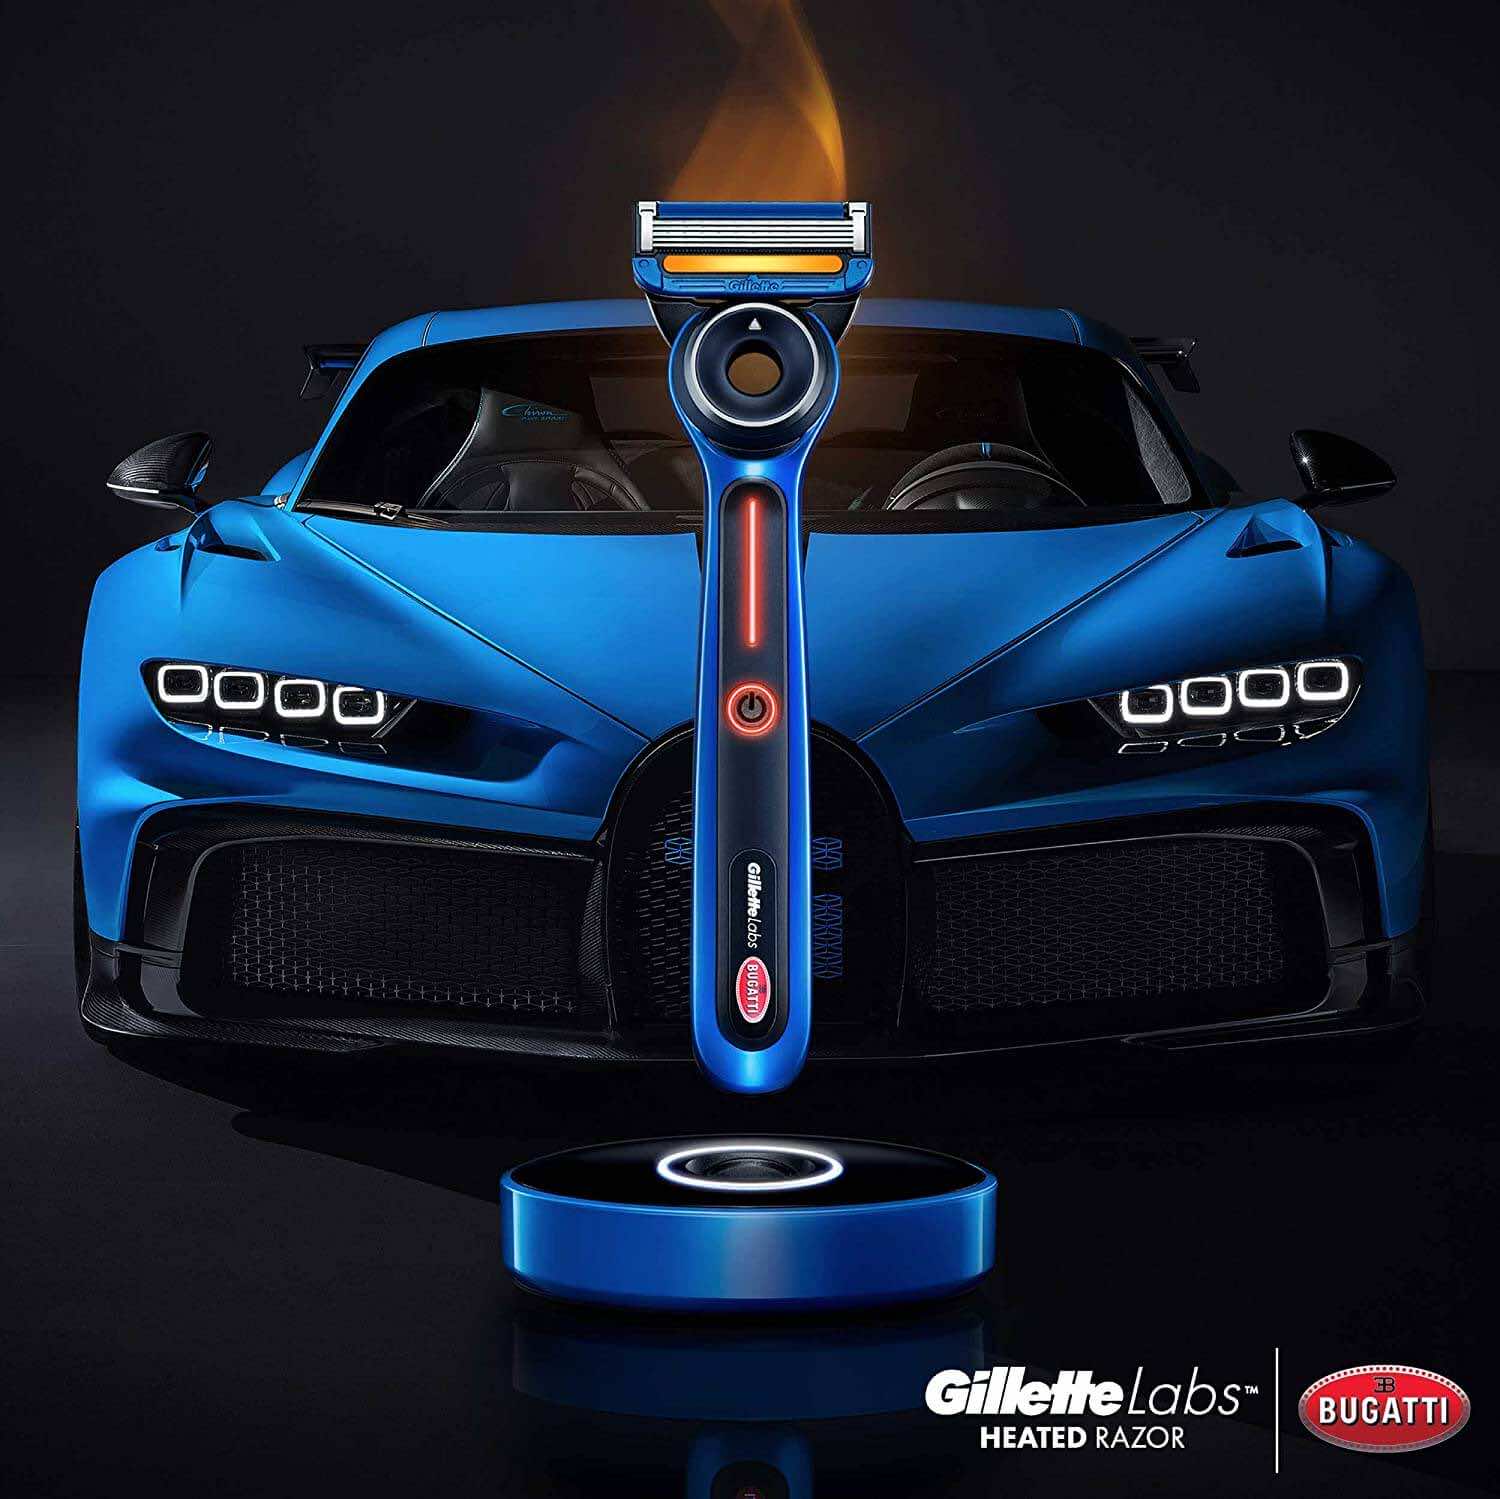 Ξυραφάκι Gillette και αυτοκίνητο Bugatti